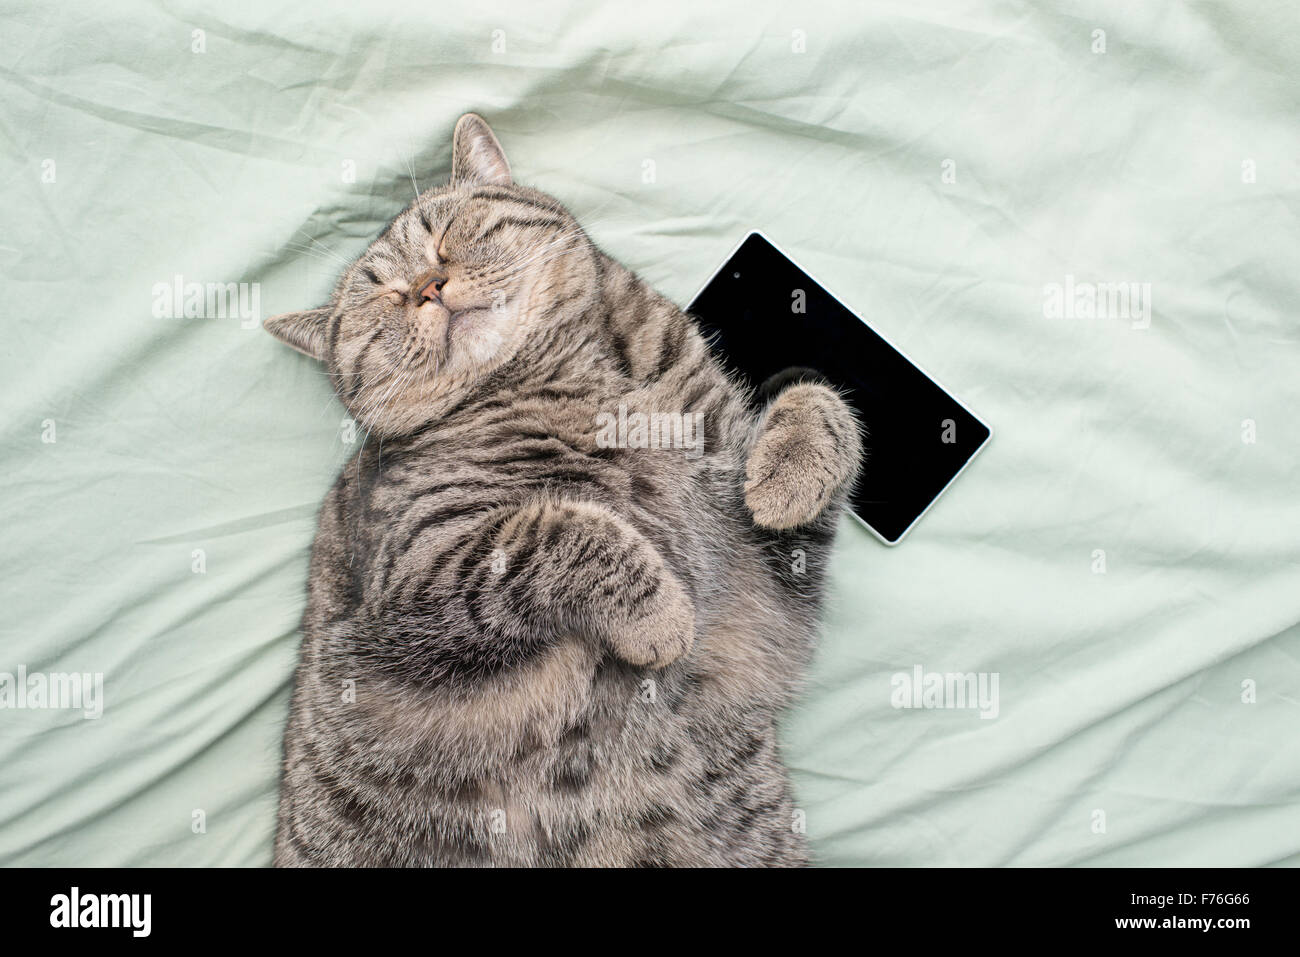 British Shorthair Gatto sdraiato sulla sua schiena nel letto, appoggiato con gli occhi chiusi. Un telefono cellulare vicino al PET. Foto Stock